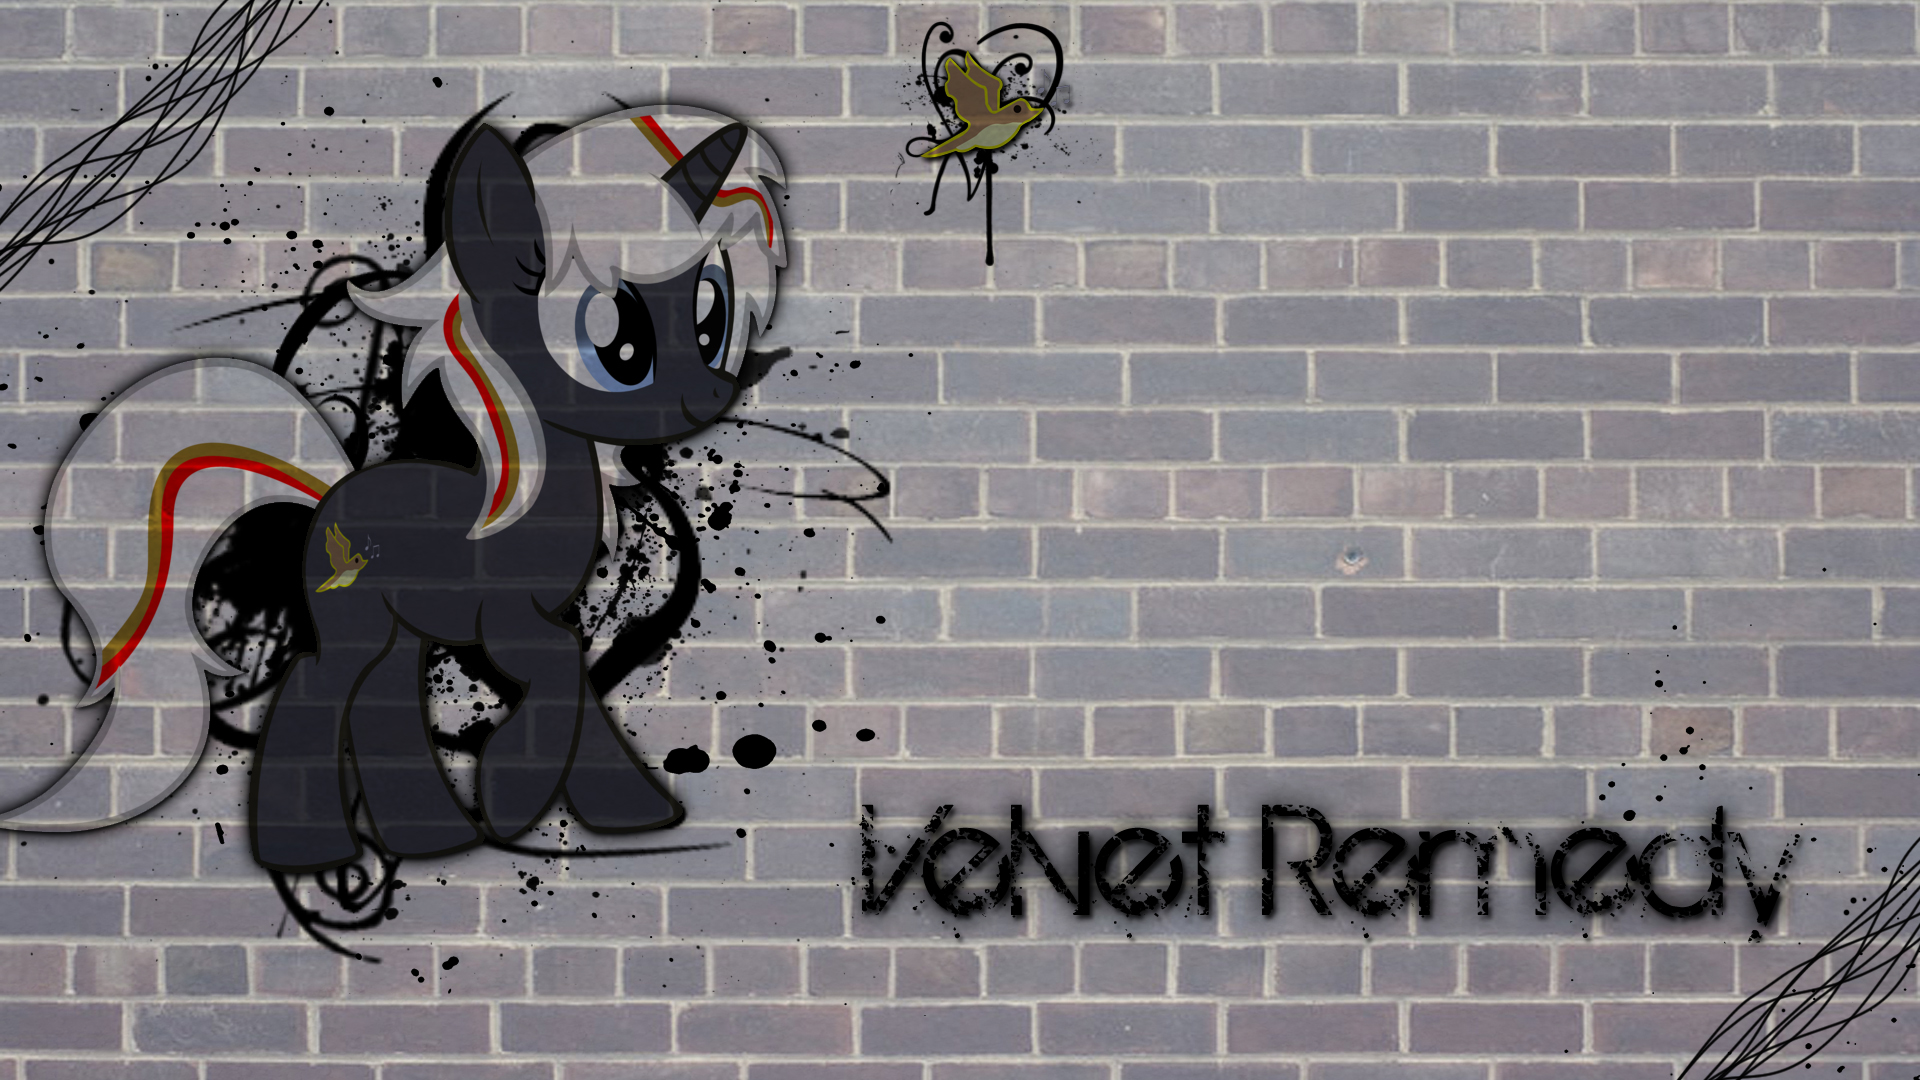 velvet_remedy_wallpaper_by_theslickoctopus-d4yhk8q.jpg